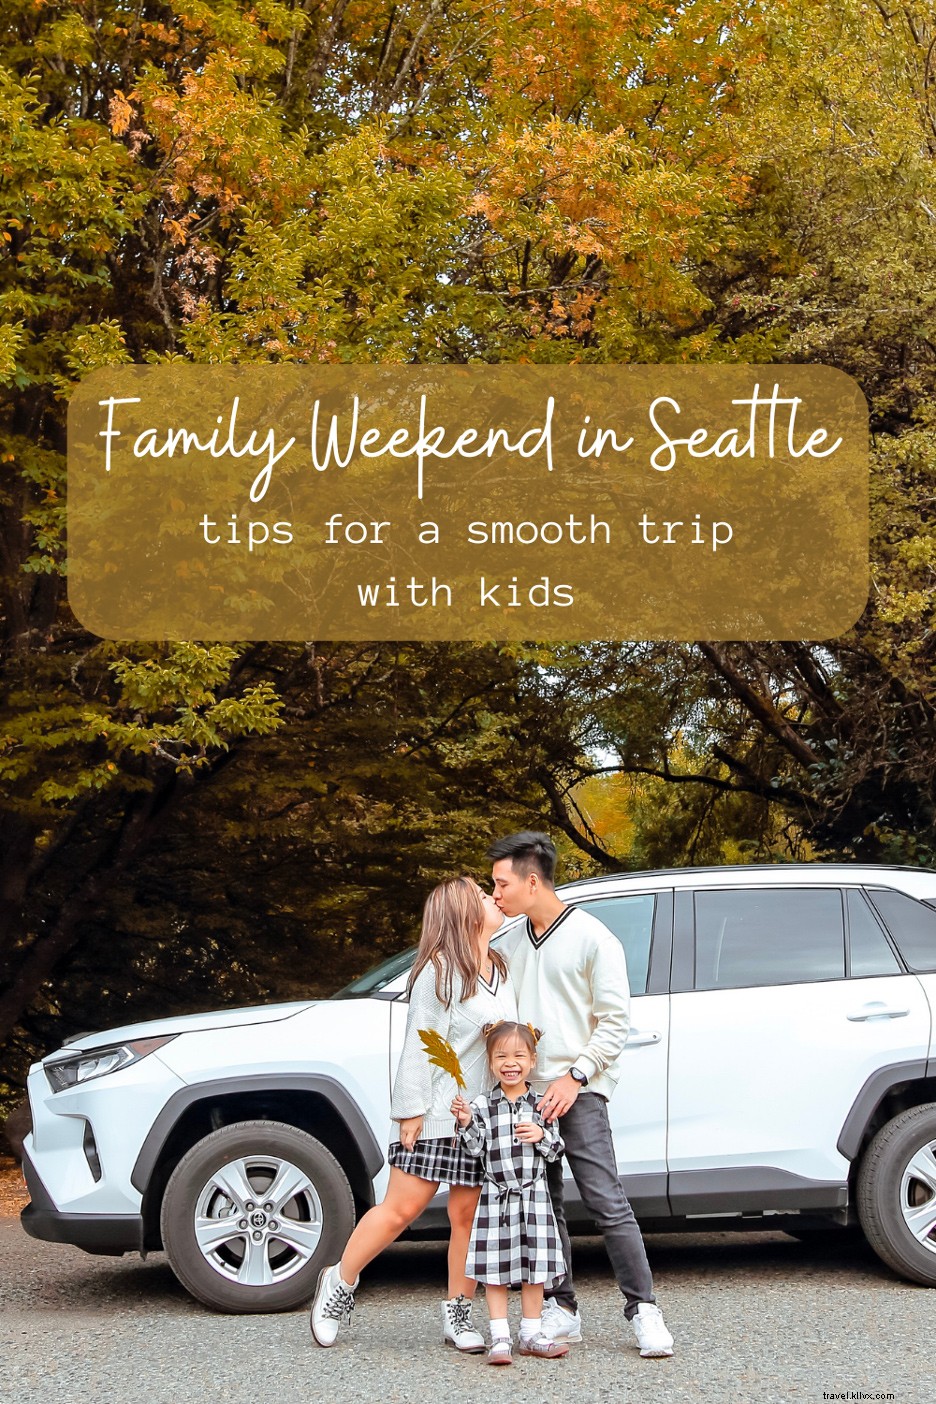 Fin de semana familiar en Seattle:más consejos para un viaje tranquilo con niños 